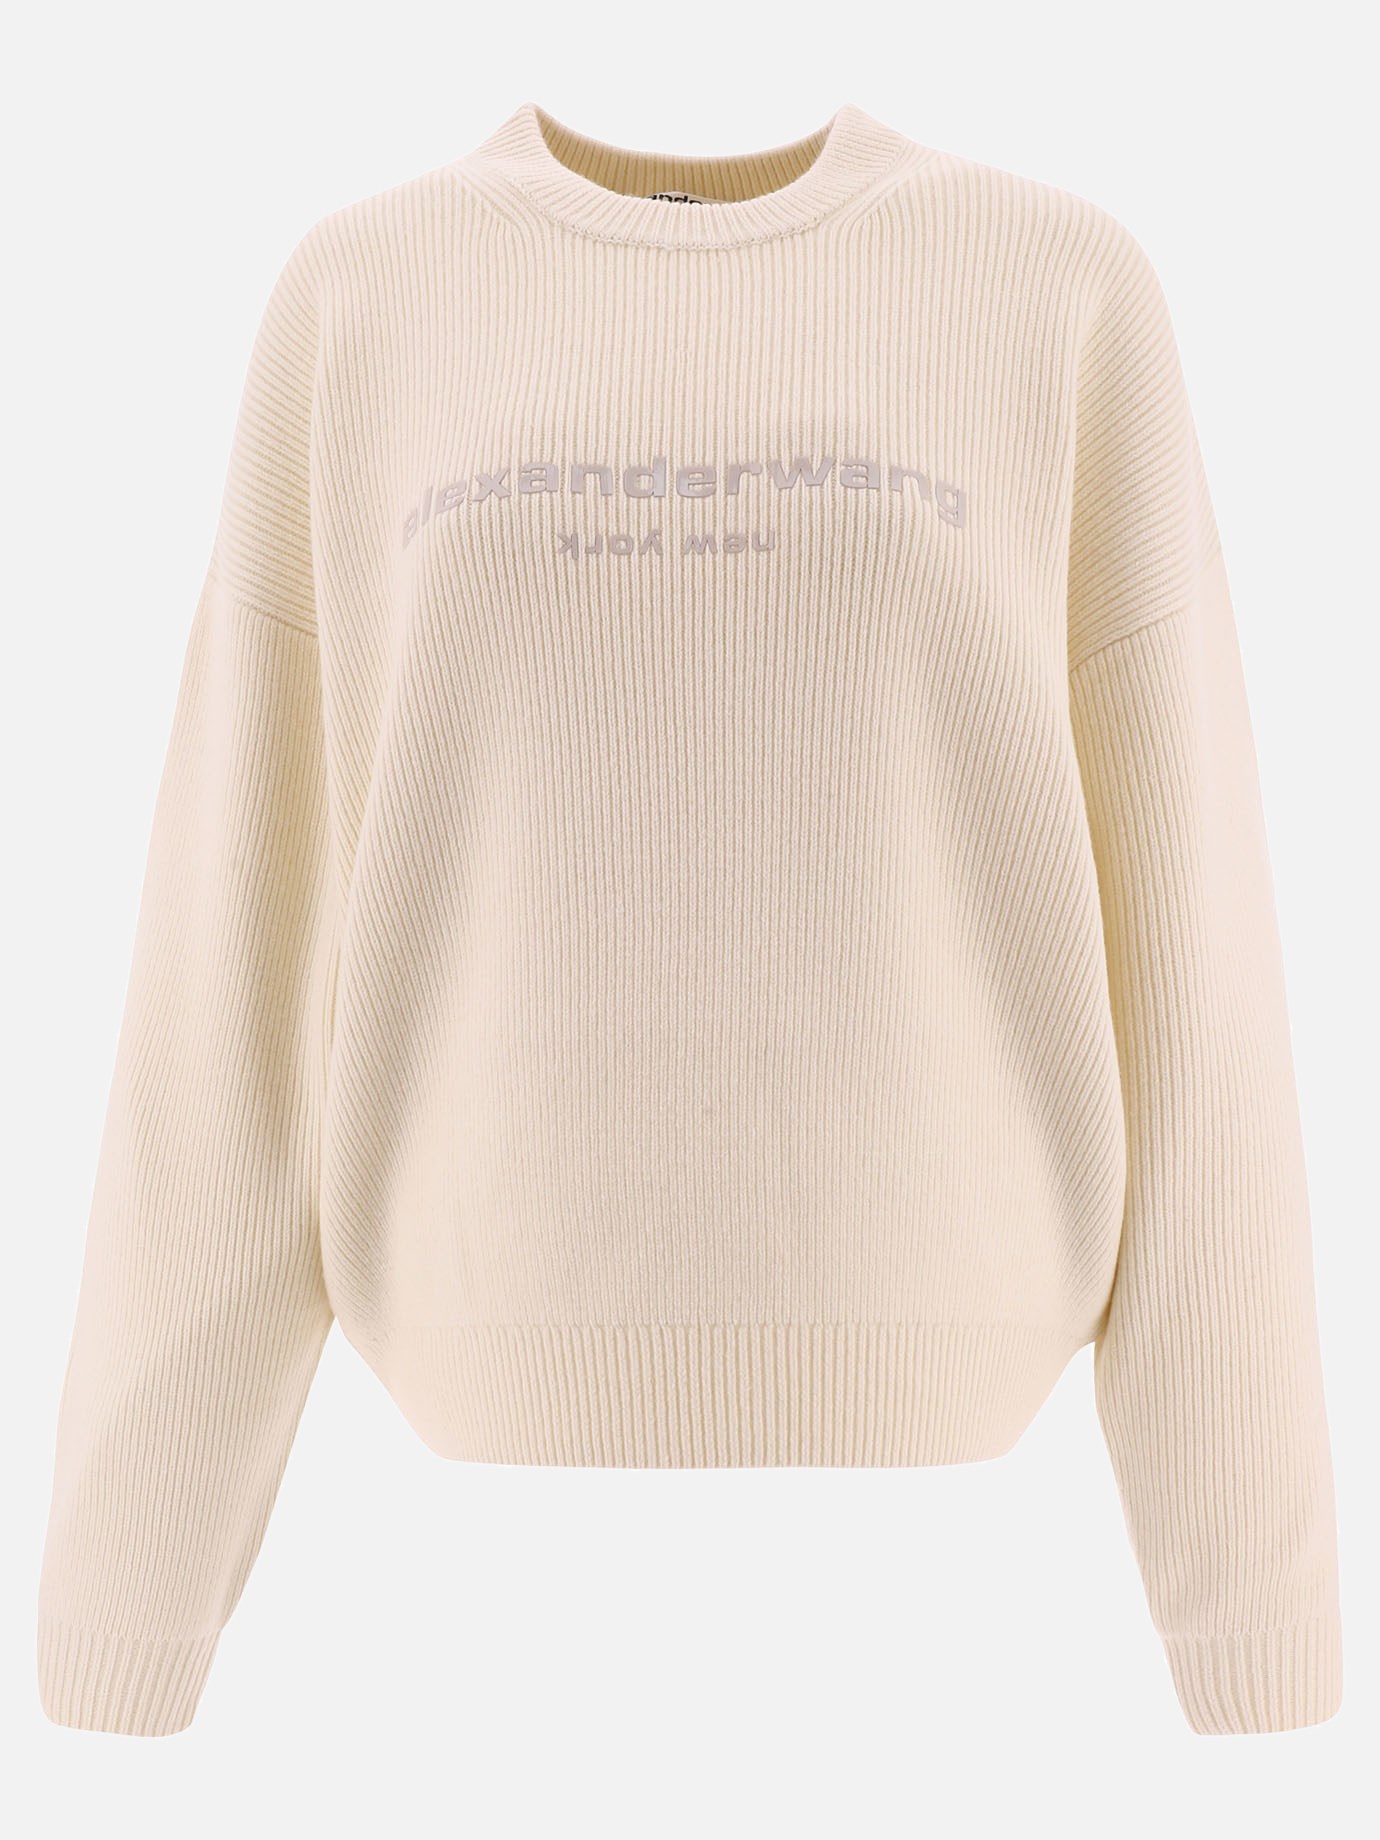 Sweater with tpu print